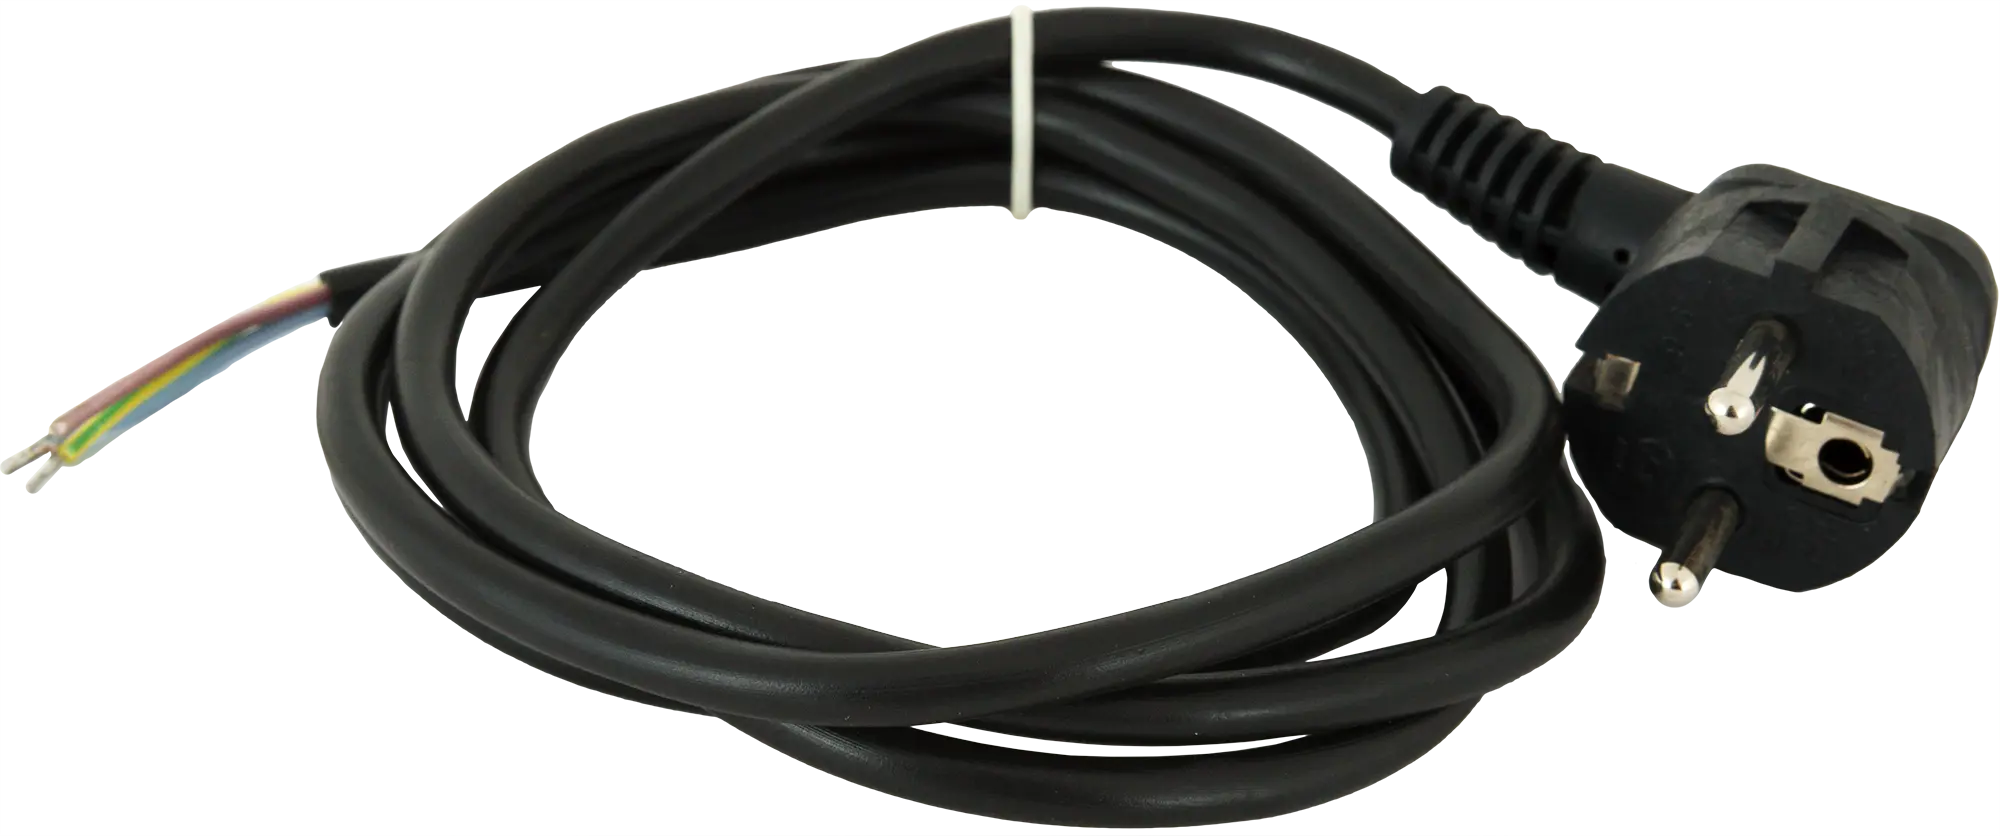 Шнур сетевой с заземлением 16 A 1.5 м цвет чёрный шнур сетевой с диммером цвет чёрный 2 м